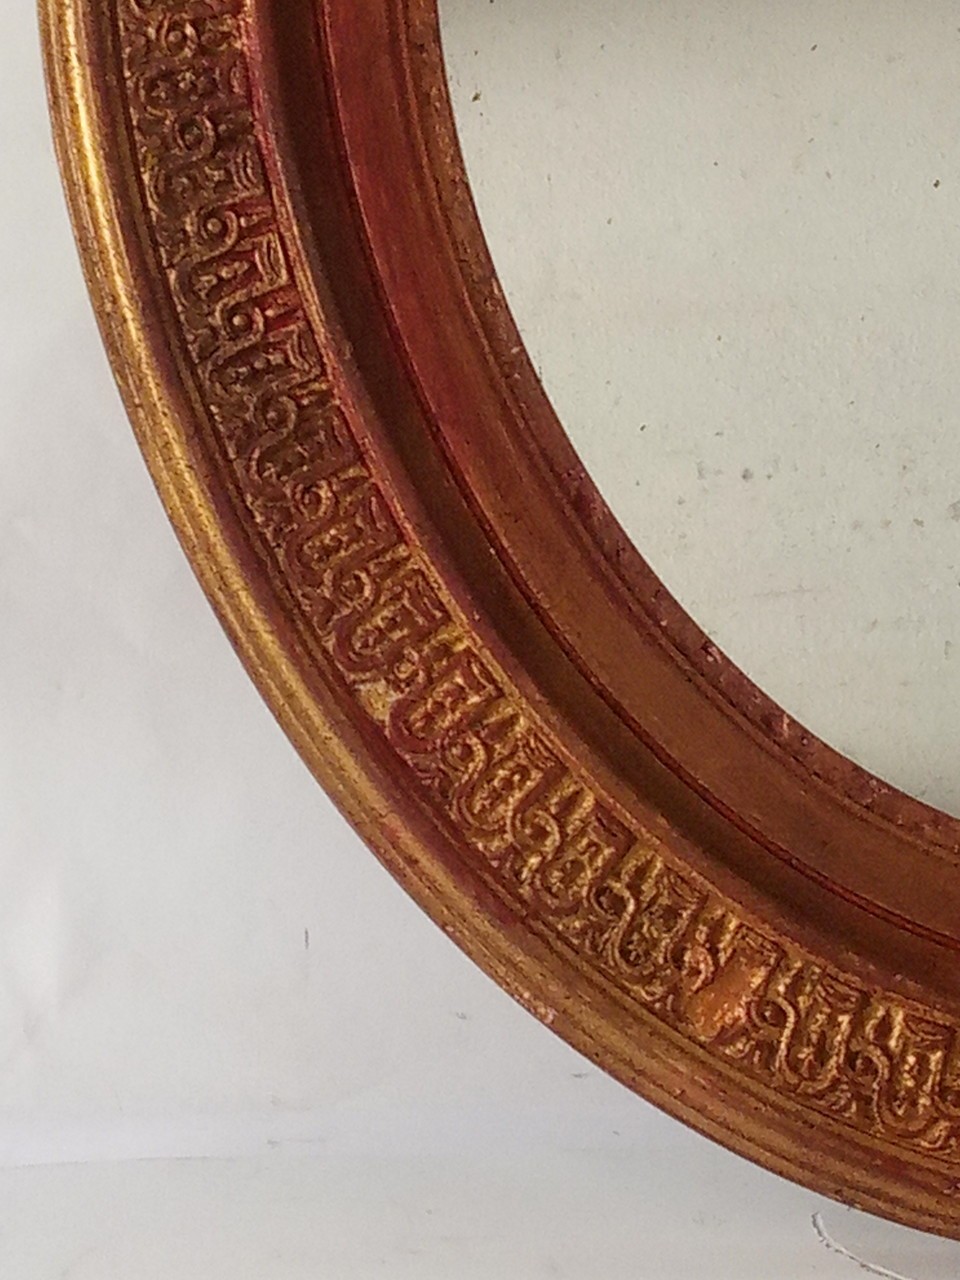 Moldura oval com espelho 